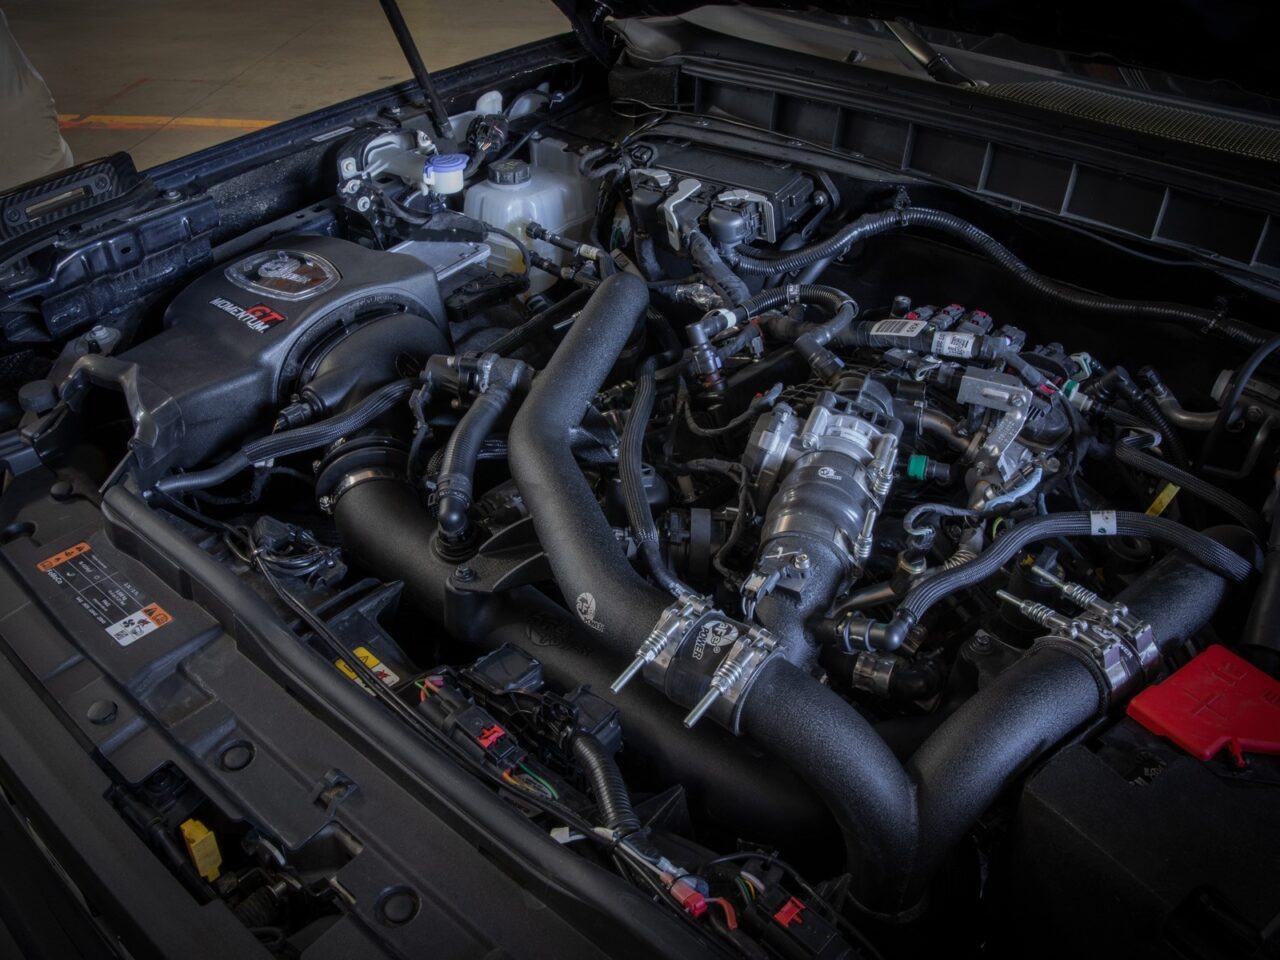 Aftermarket aFe cold air intake installed on 2022 Ford Bronco V6 engine under the hood